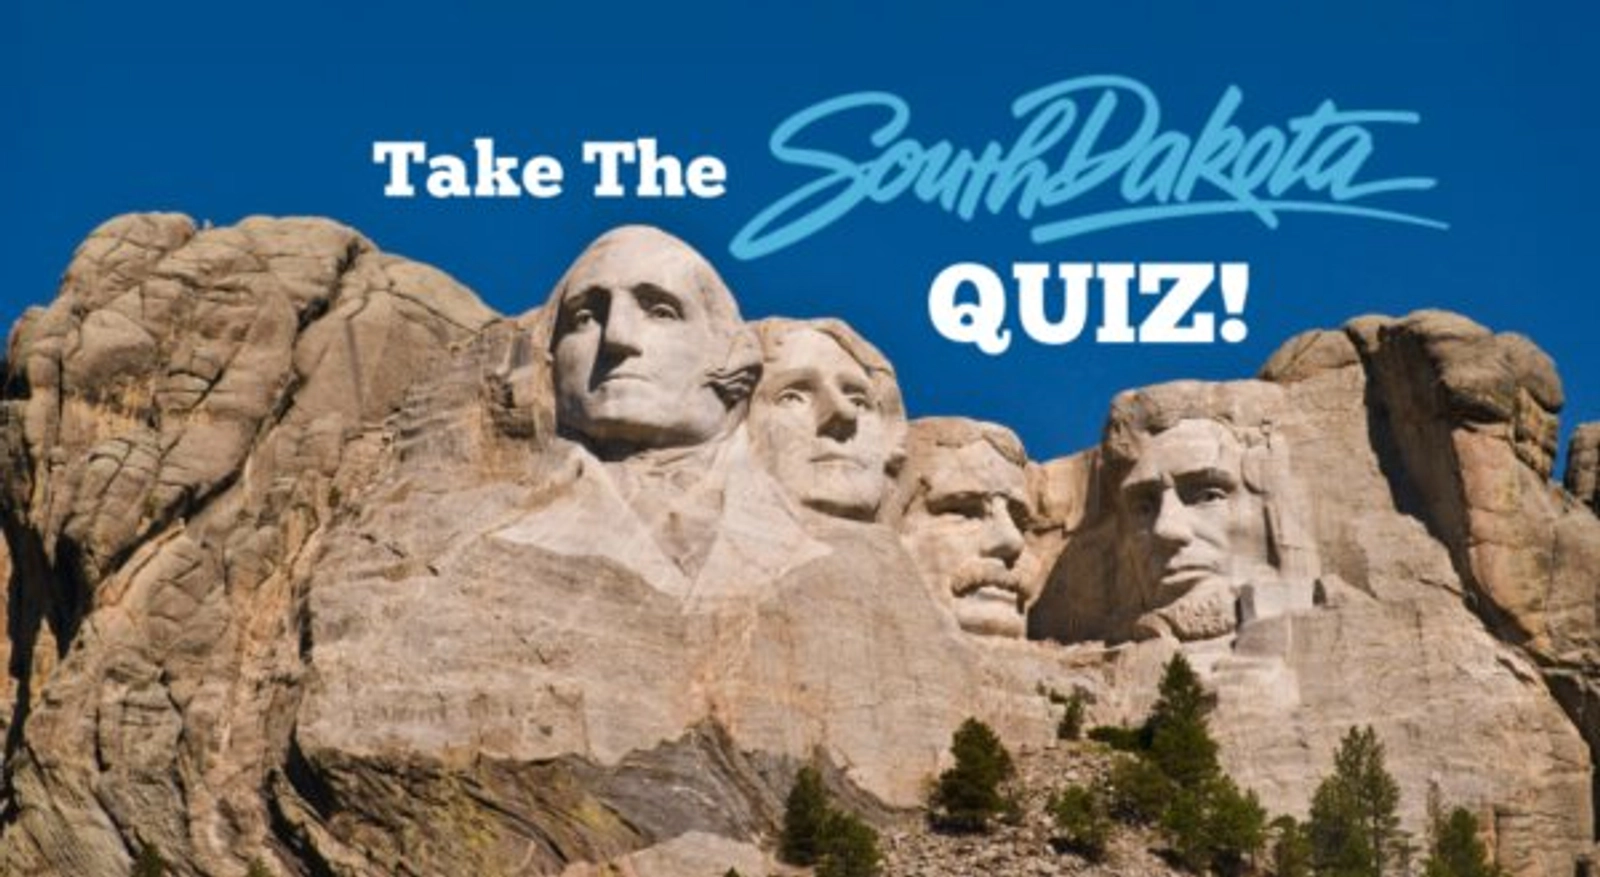 Take the South Dakota Tourism Quiz to win Gift Card $$ at Jordan Creek! - Thumbnail Image